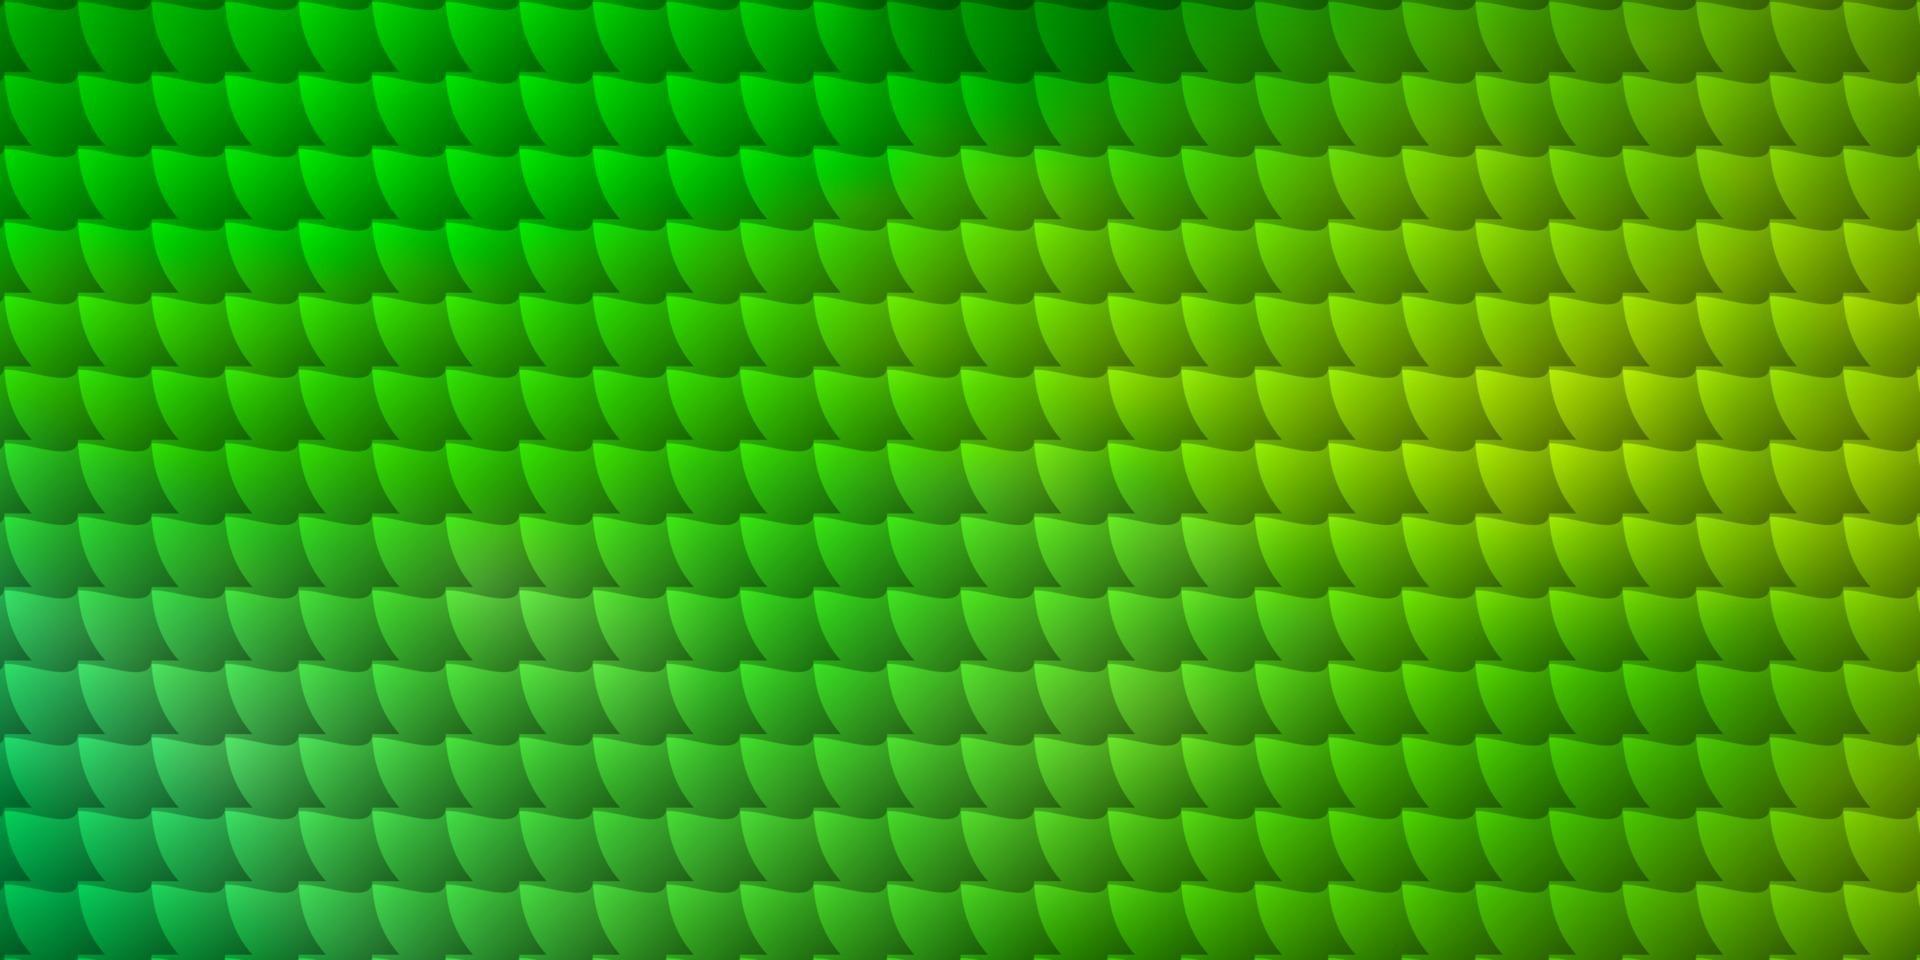 modelo de vetor verde e amarelo claro com retângulos.